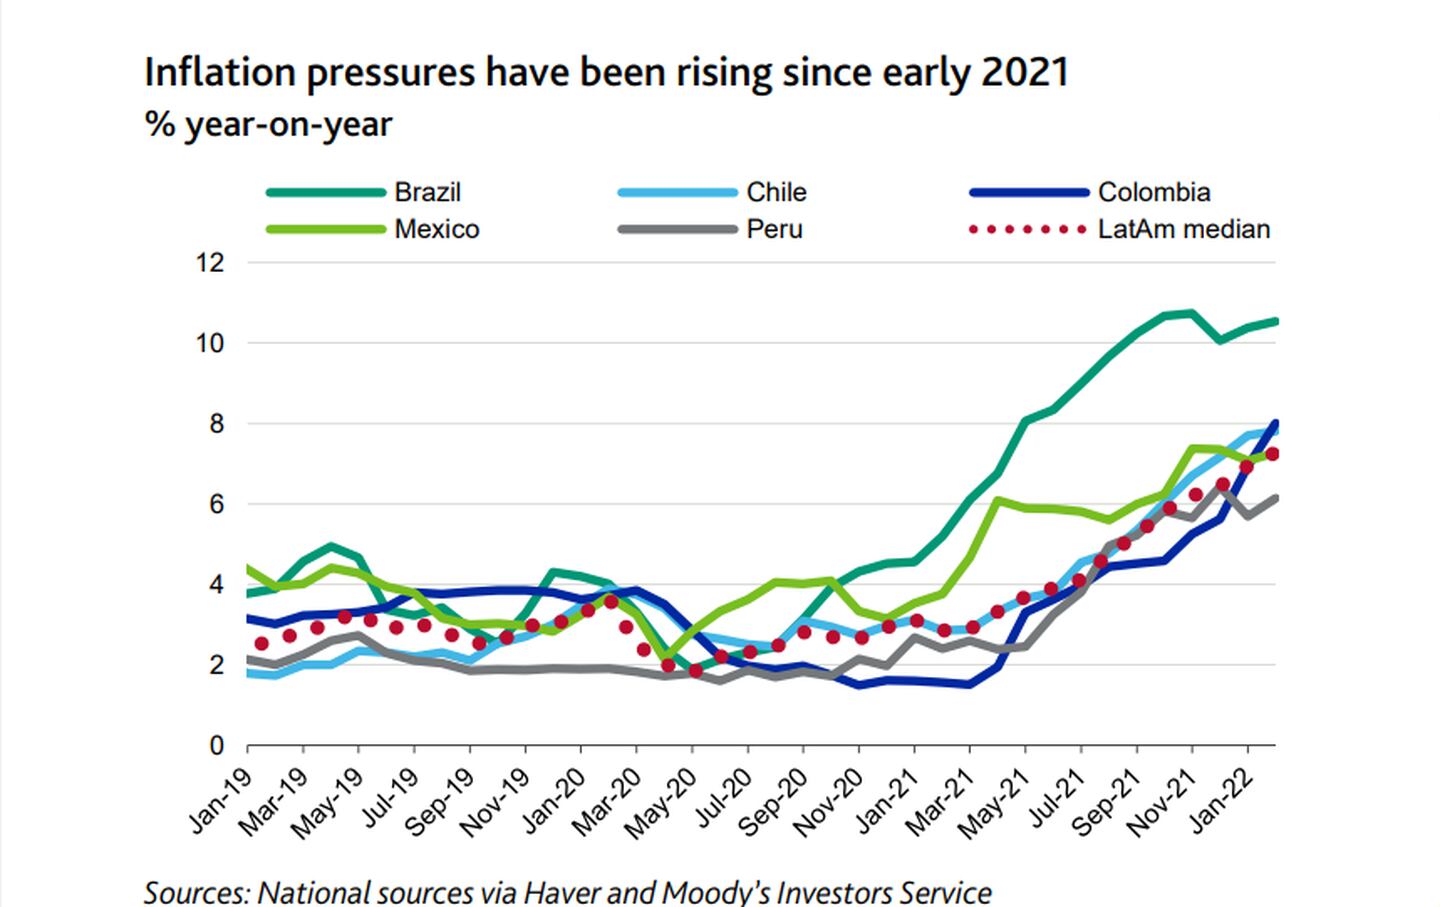 Las presiones inflacionarias han estado aumentando desde principios de 2021dfd